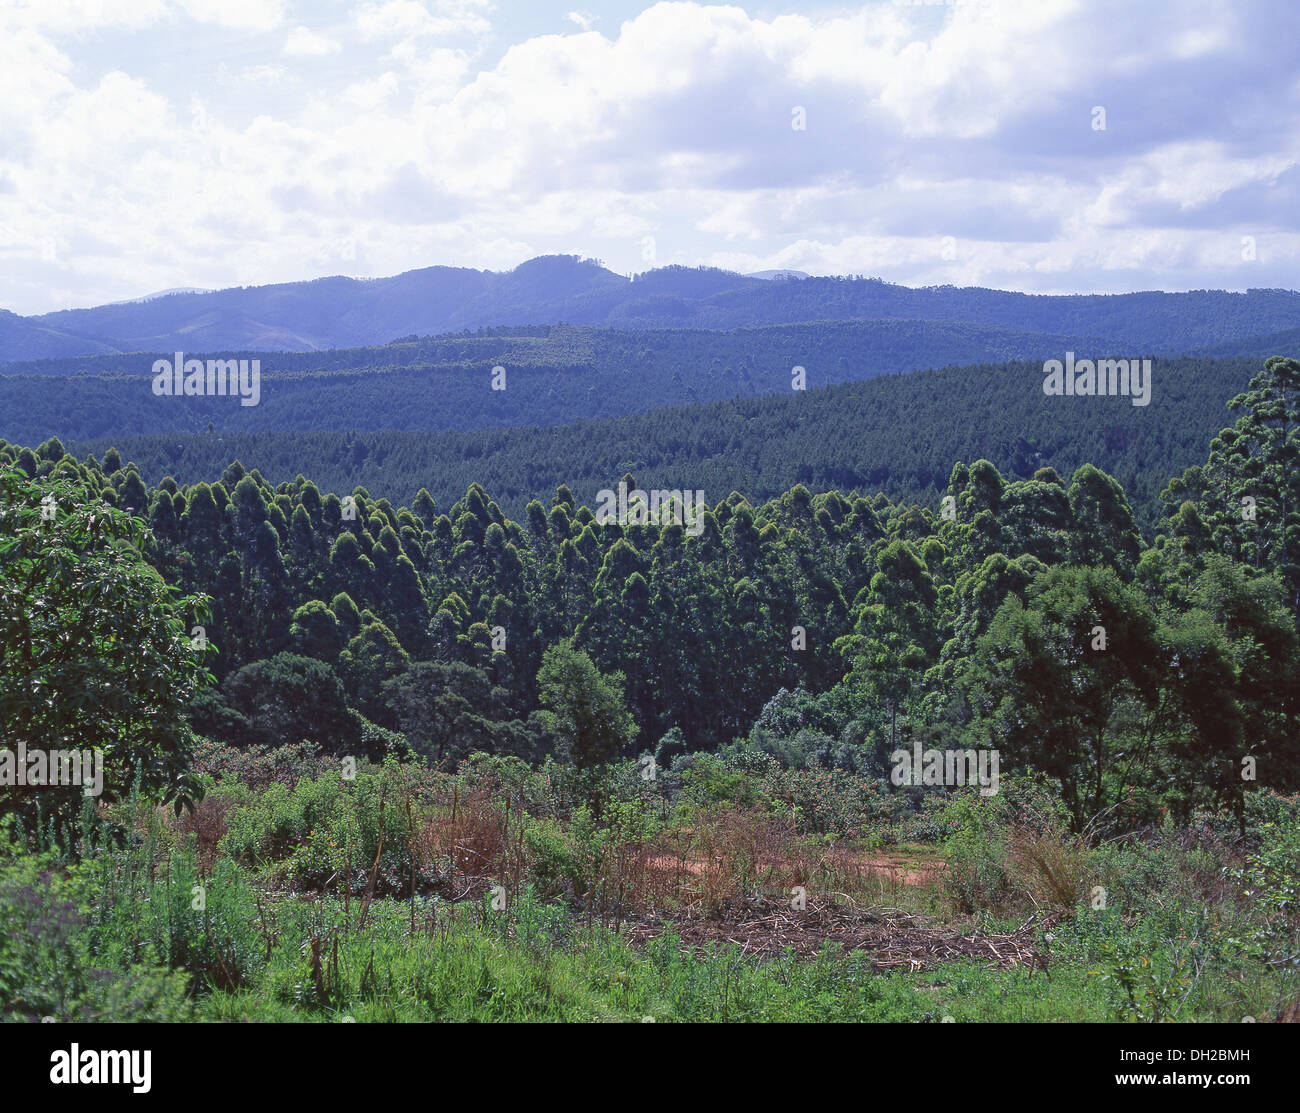 Blick auf die Landschaft vom Pigg's Peak, Hhohho District, Eswatini (Swasiland) Stockfoto